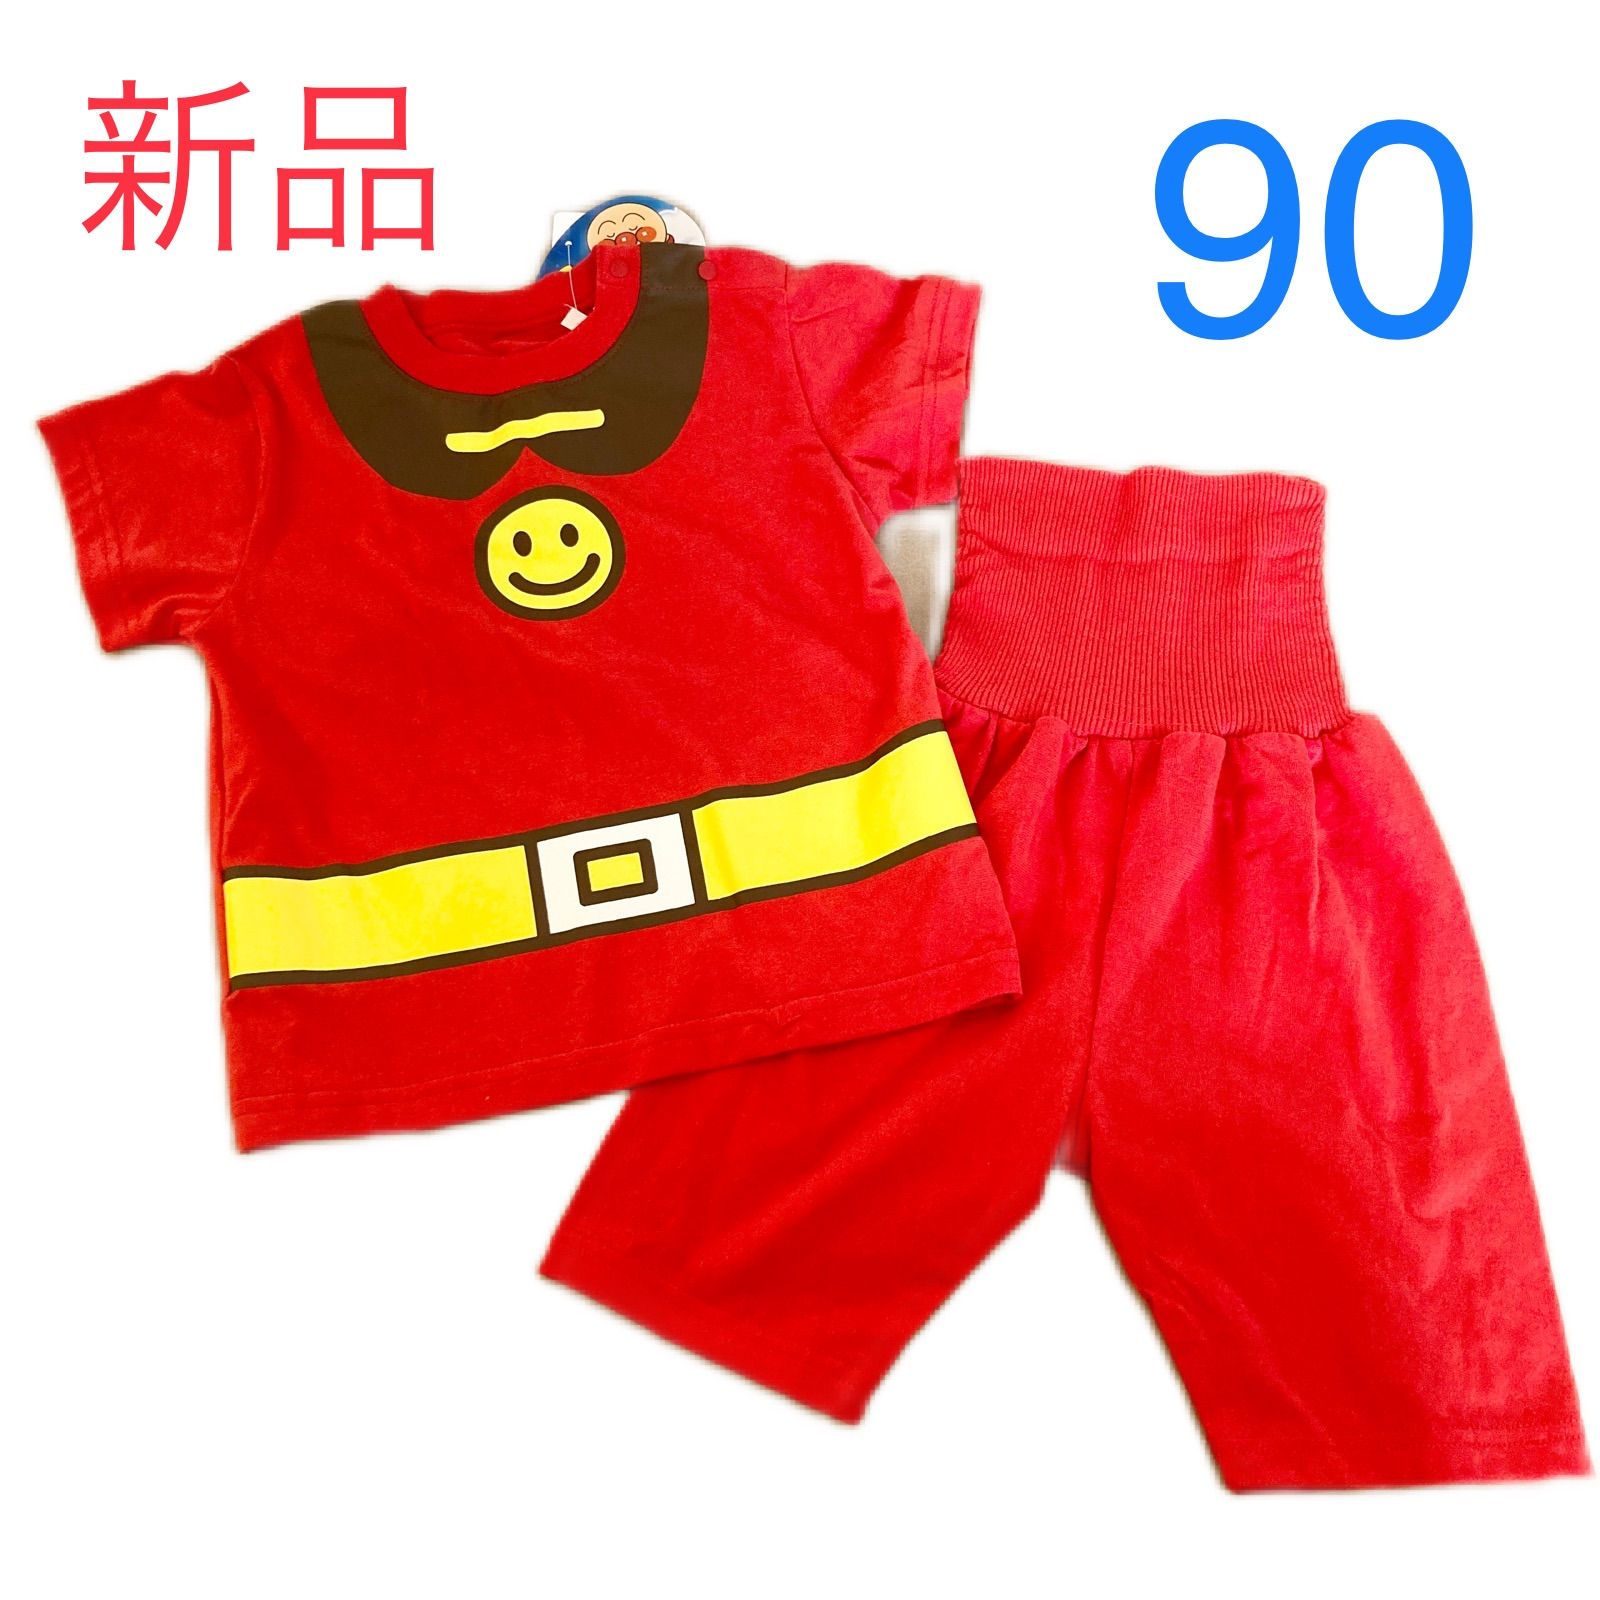 メルカリShops - アンパンマン パジャマ 90 tシャツ ハーフパンツ